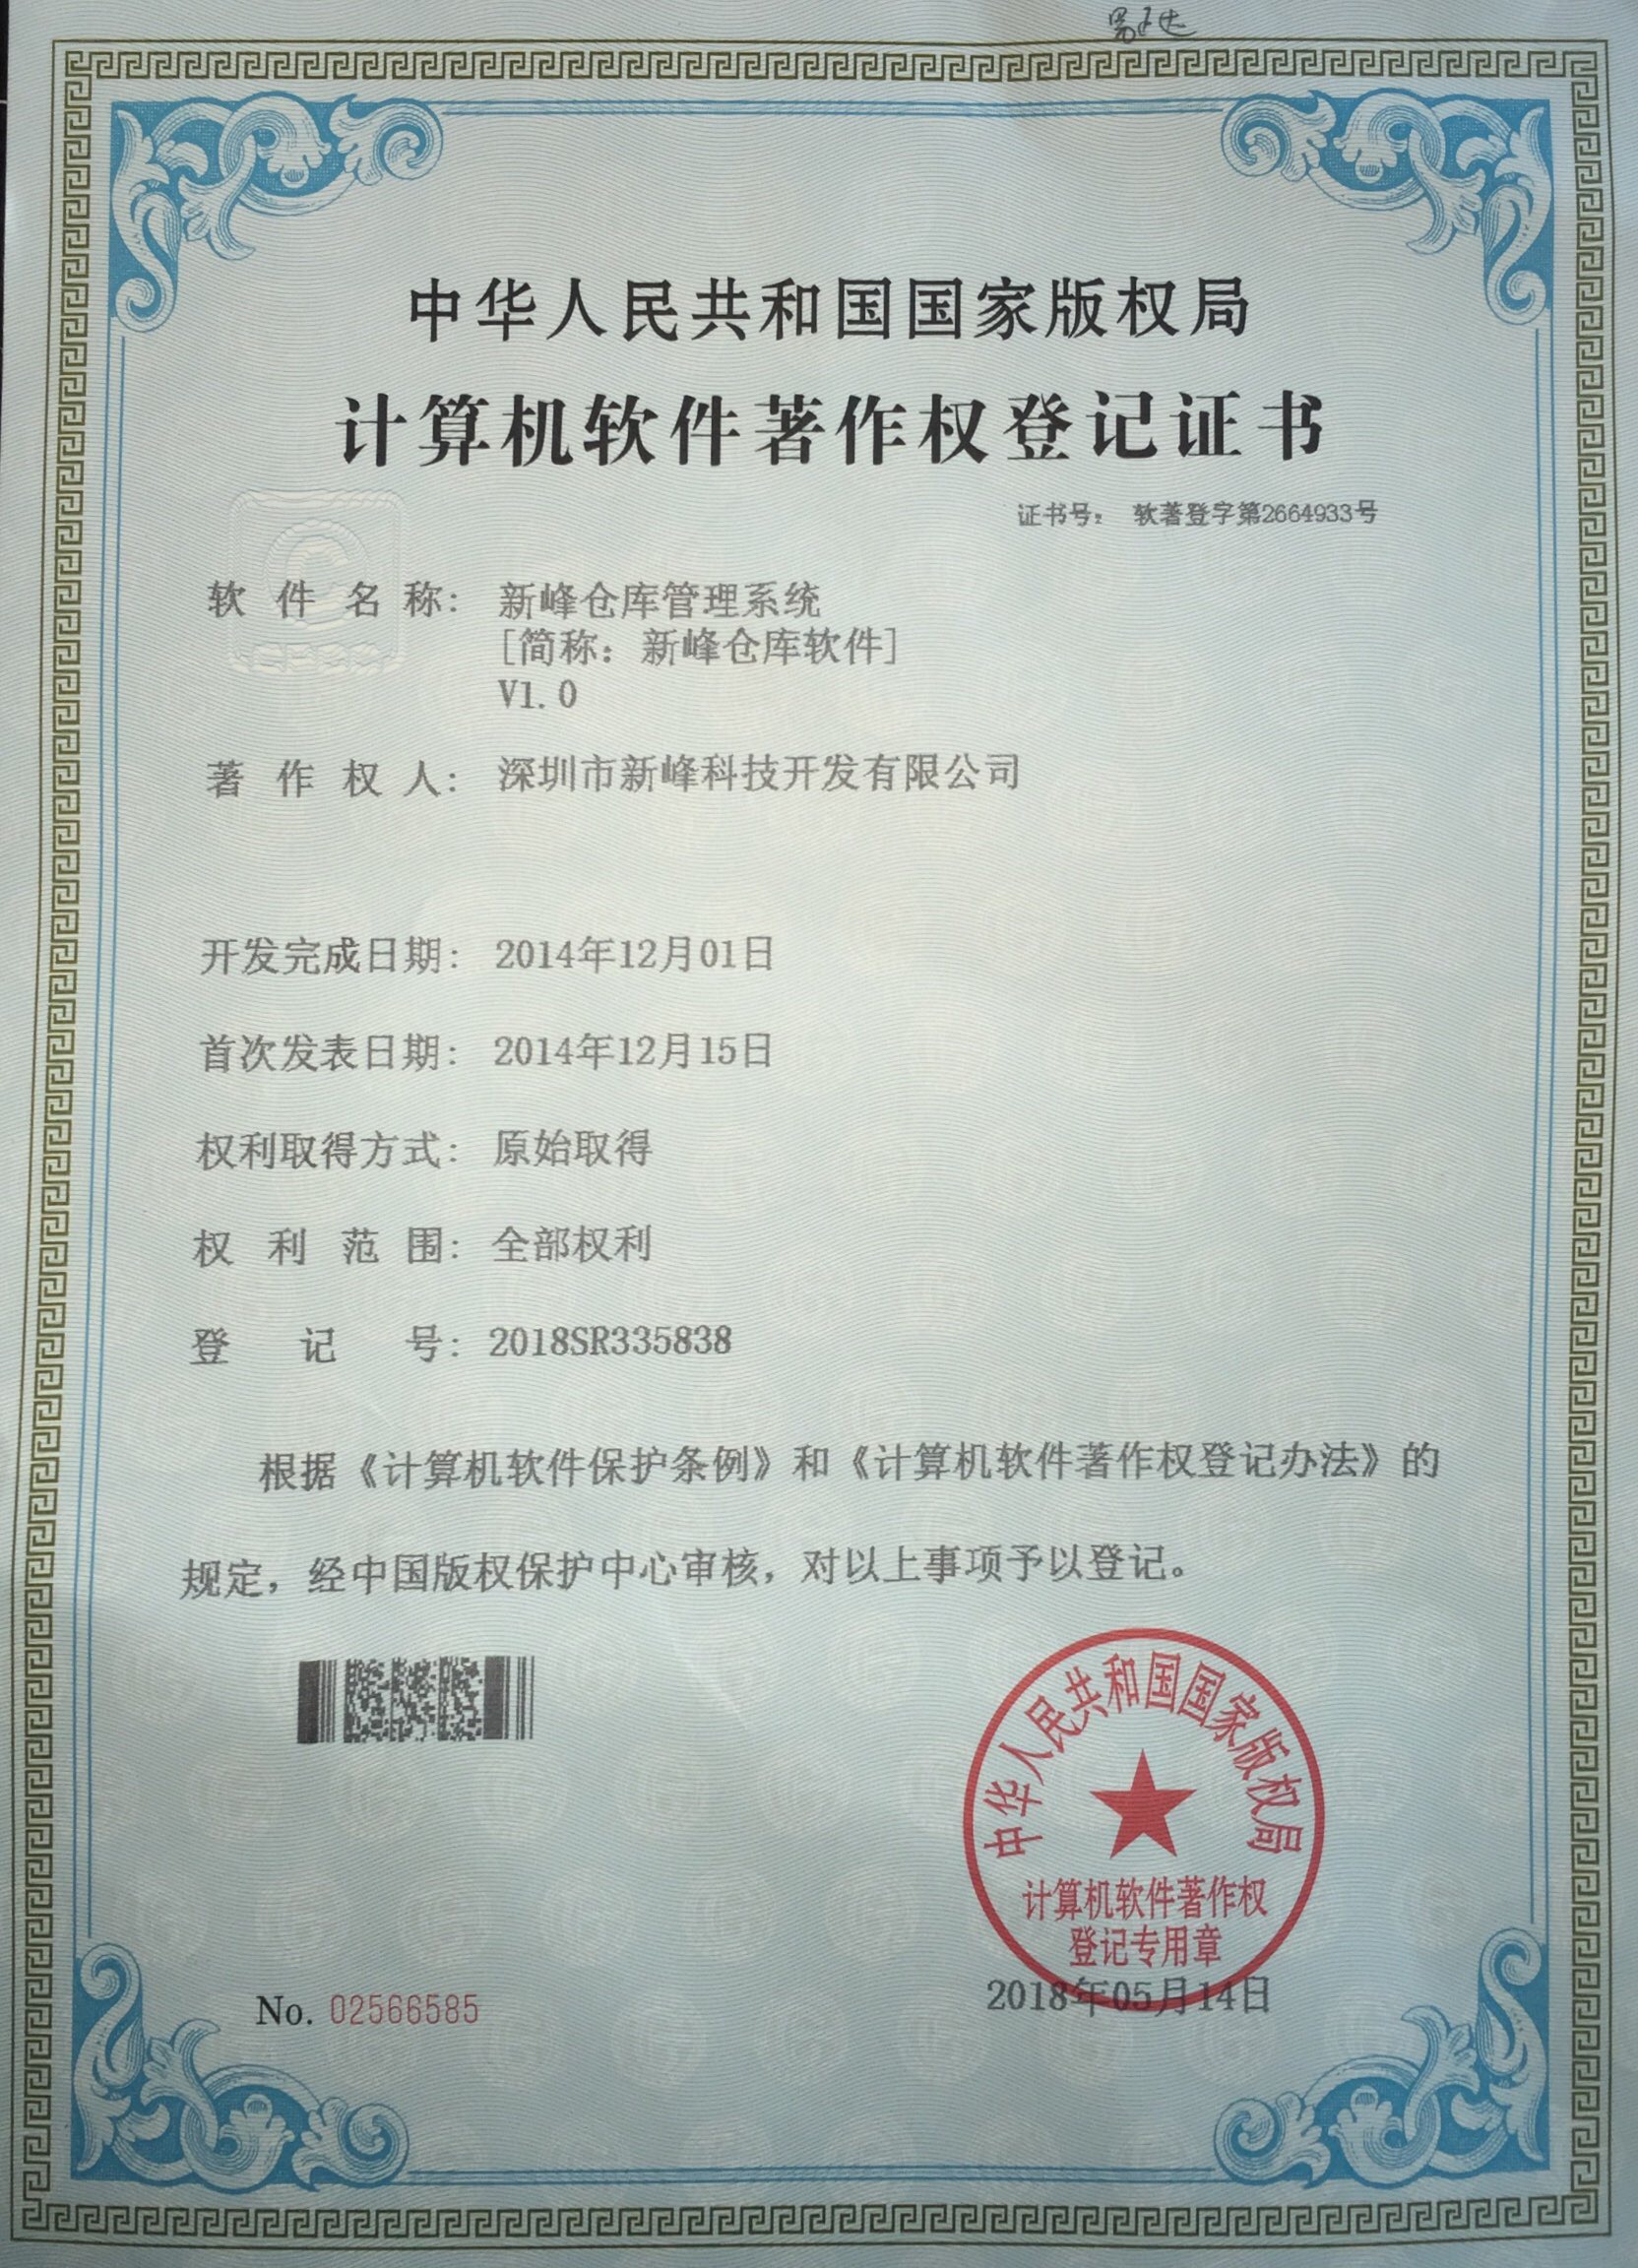 新峰仓库管理系统计算机软件著作权登记证书